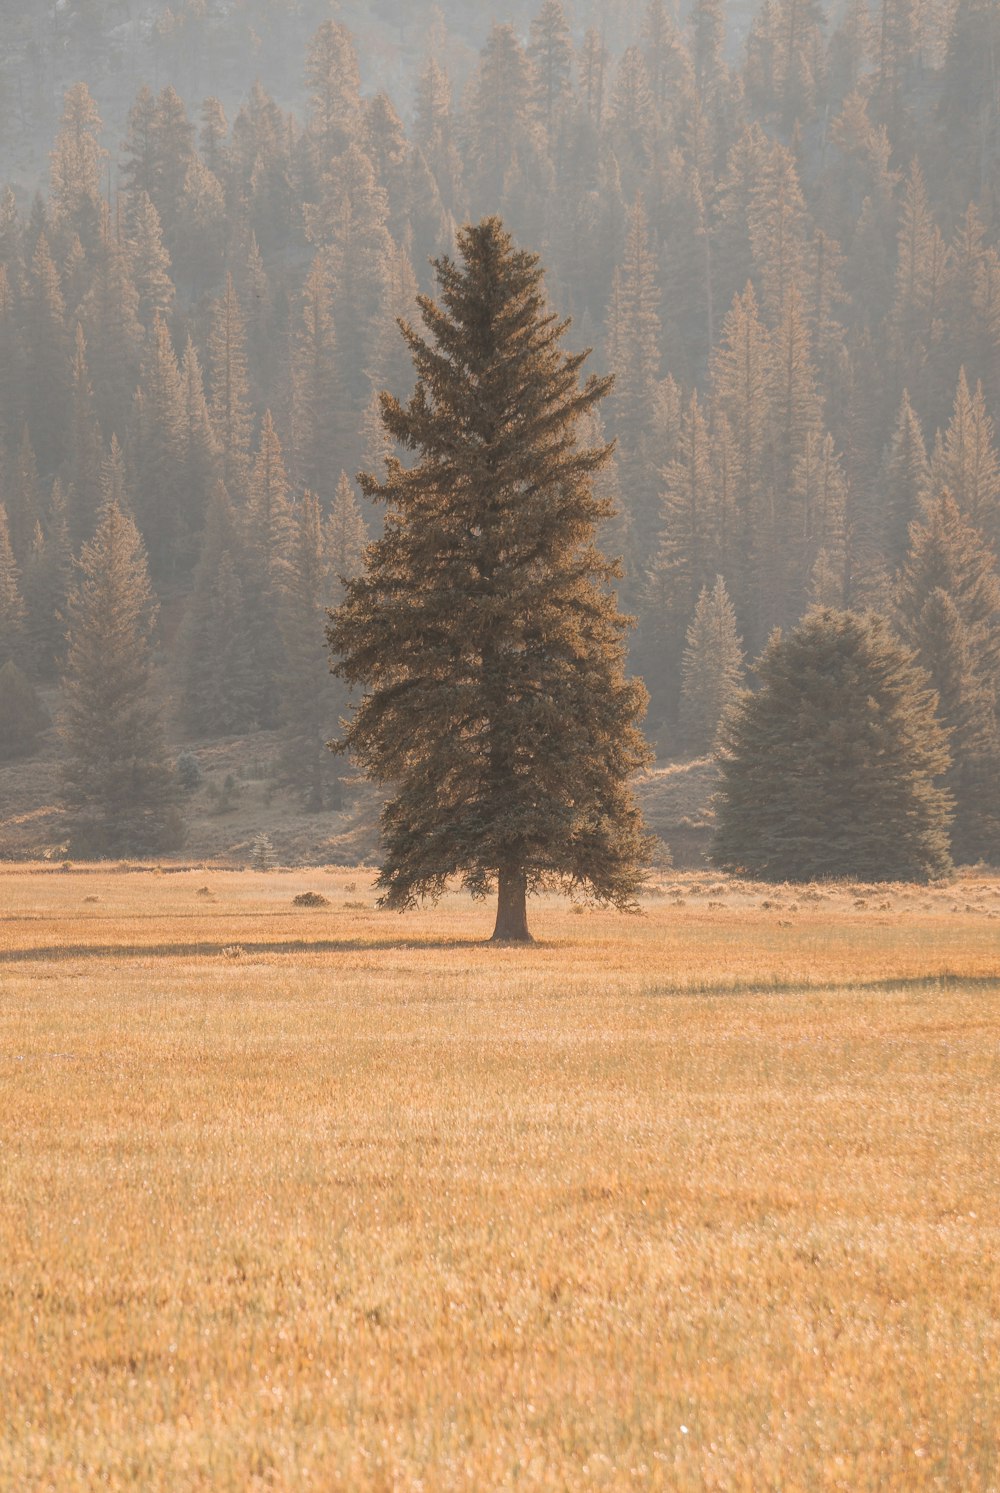 Un árbol solitario está solo en un campo